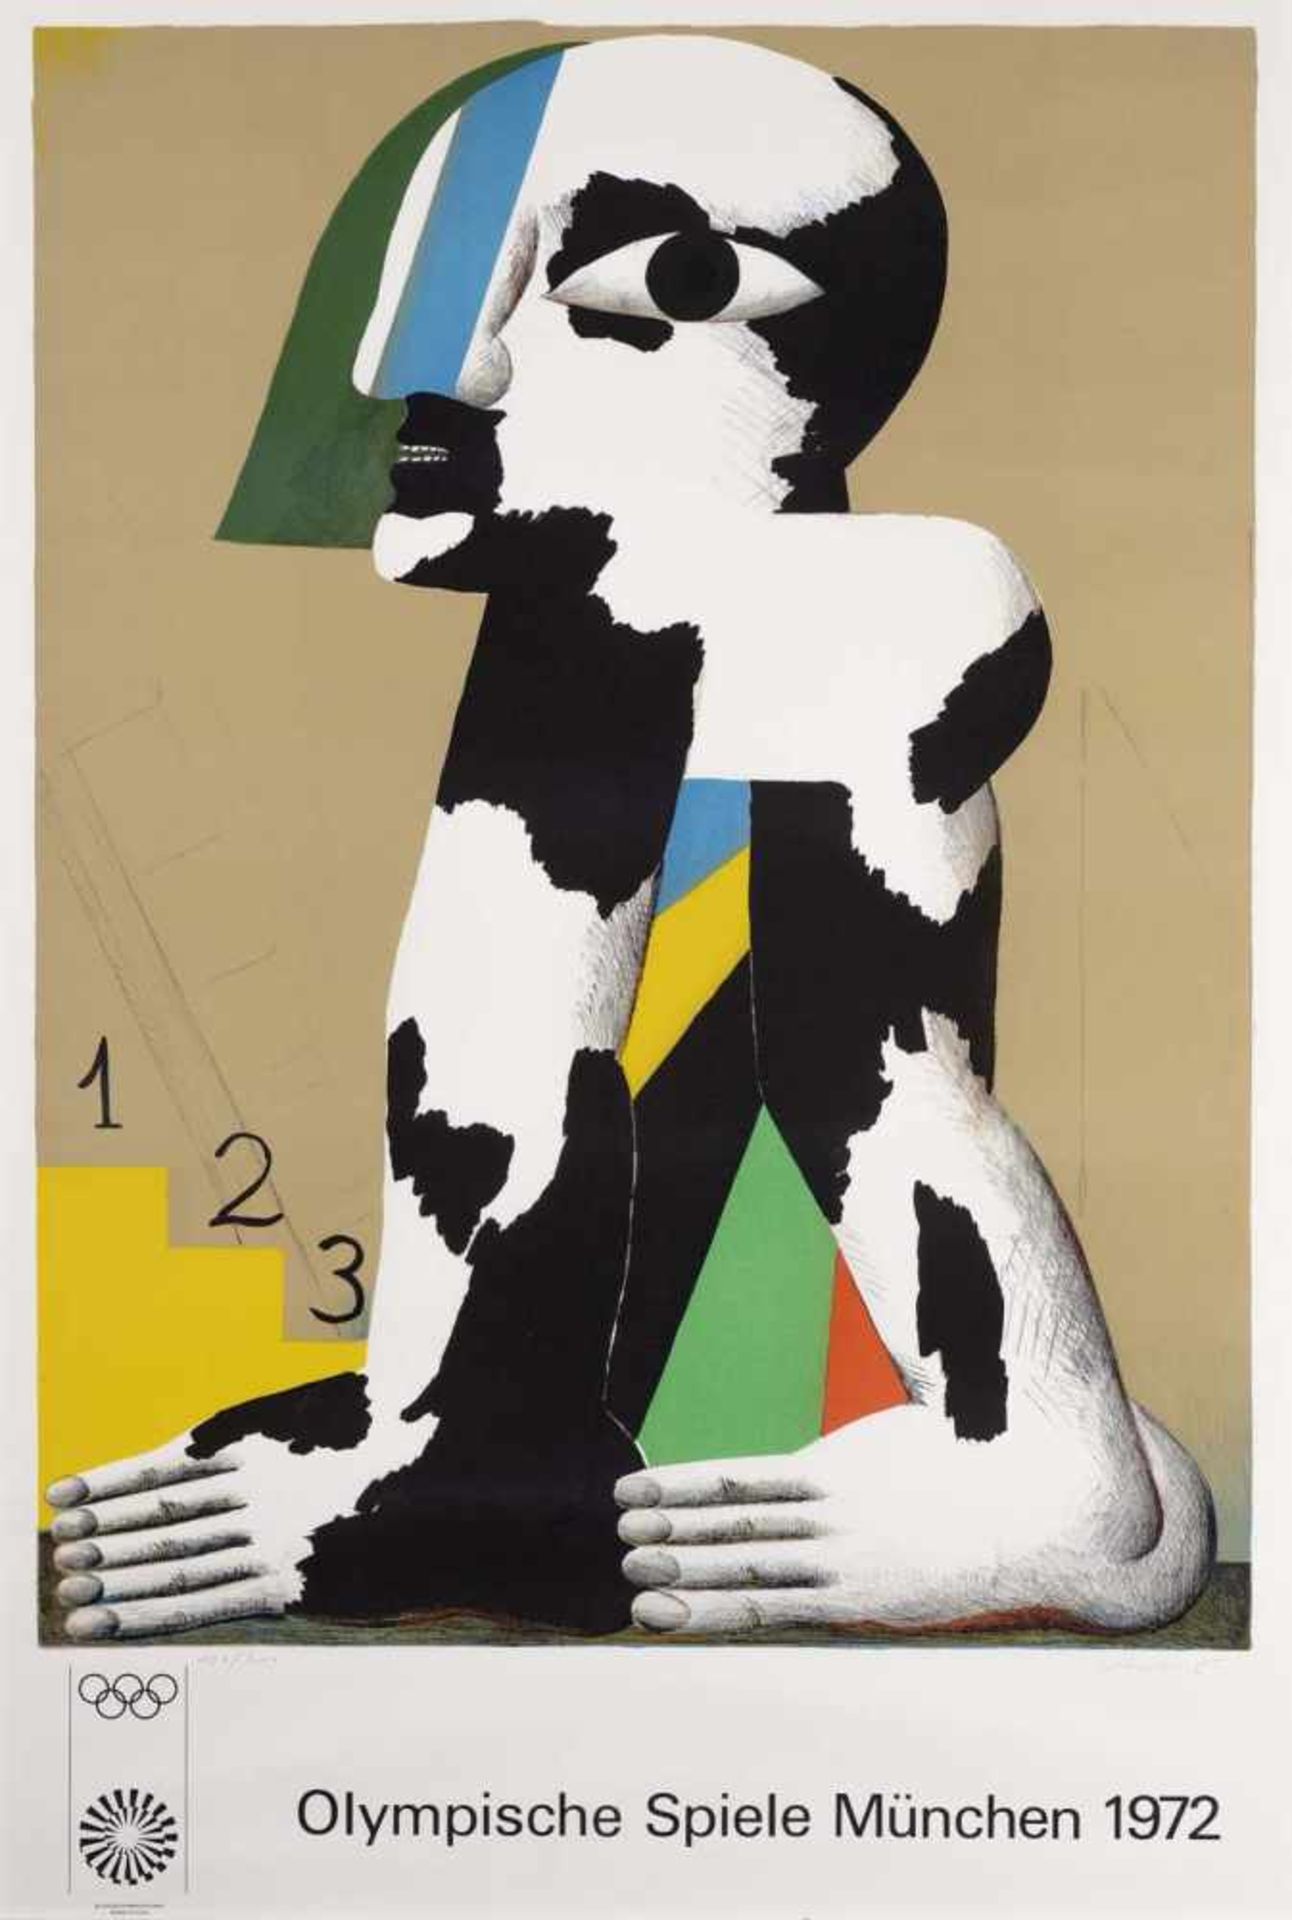 Antes, HorstHeppenheim, geboren 1936105,5 x 70 cm,R."Schwarz - weiß - gefleckte Figur (Olympia)",